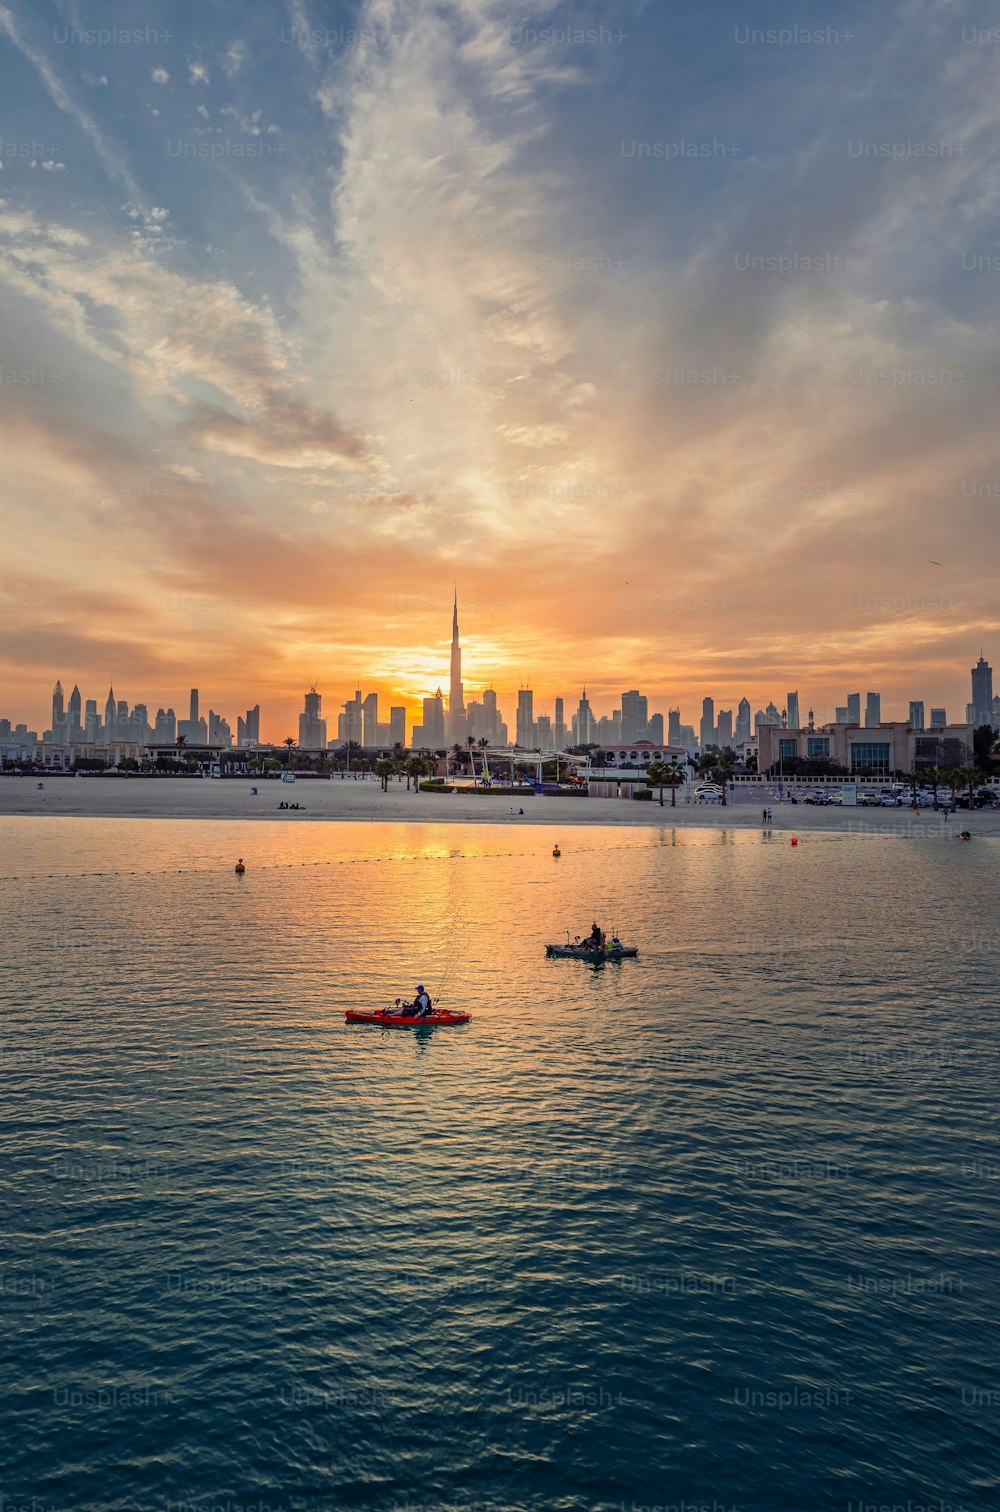 Um cenário dramático de um pôr do sol colorido no céu nublado sobre a paisagem urbana de Dubai